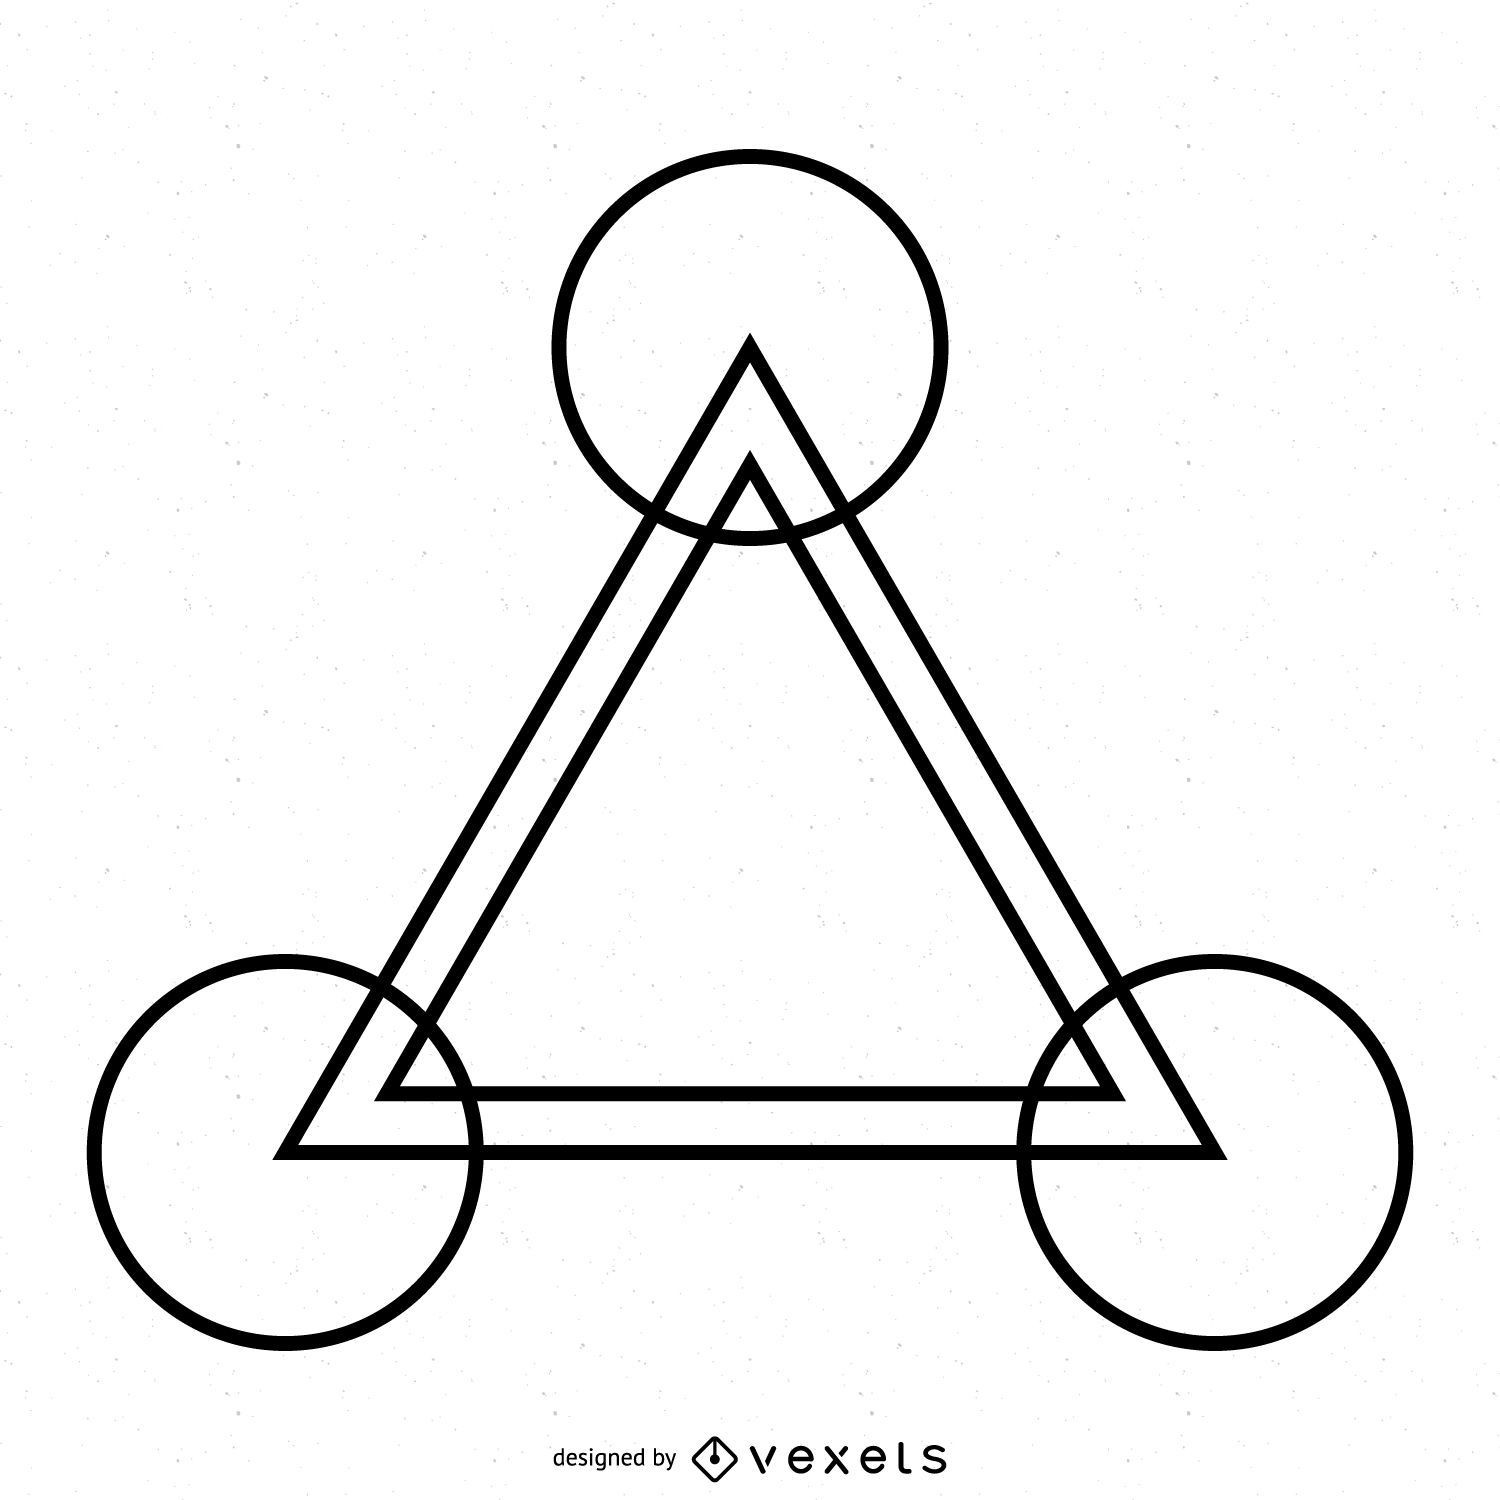 Desenho de triângulo em círculo